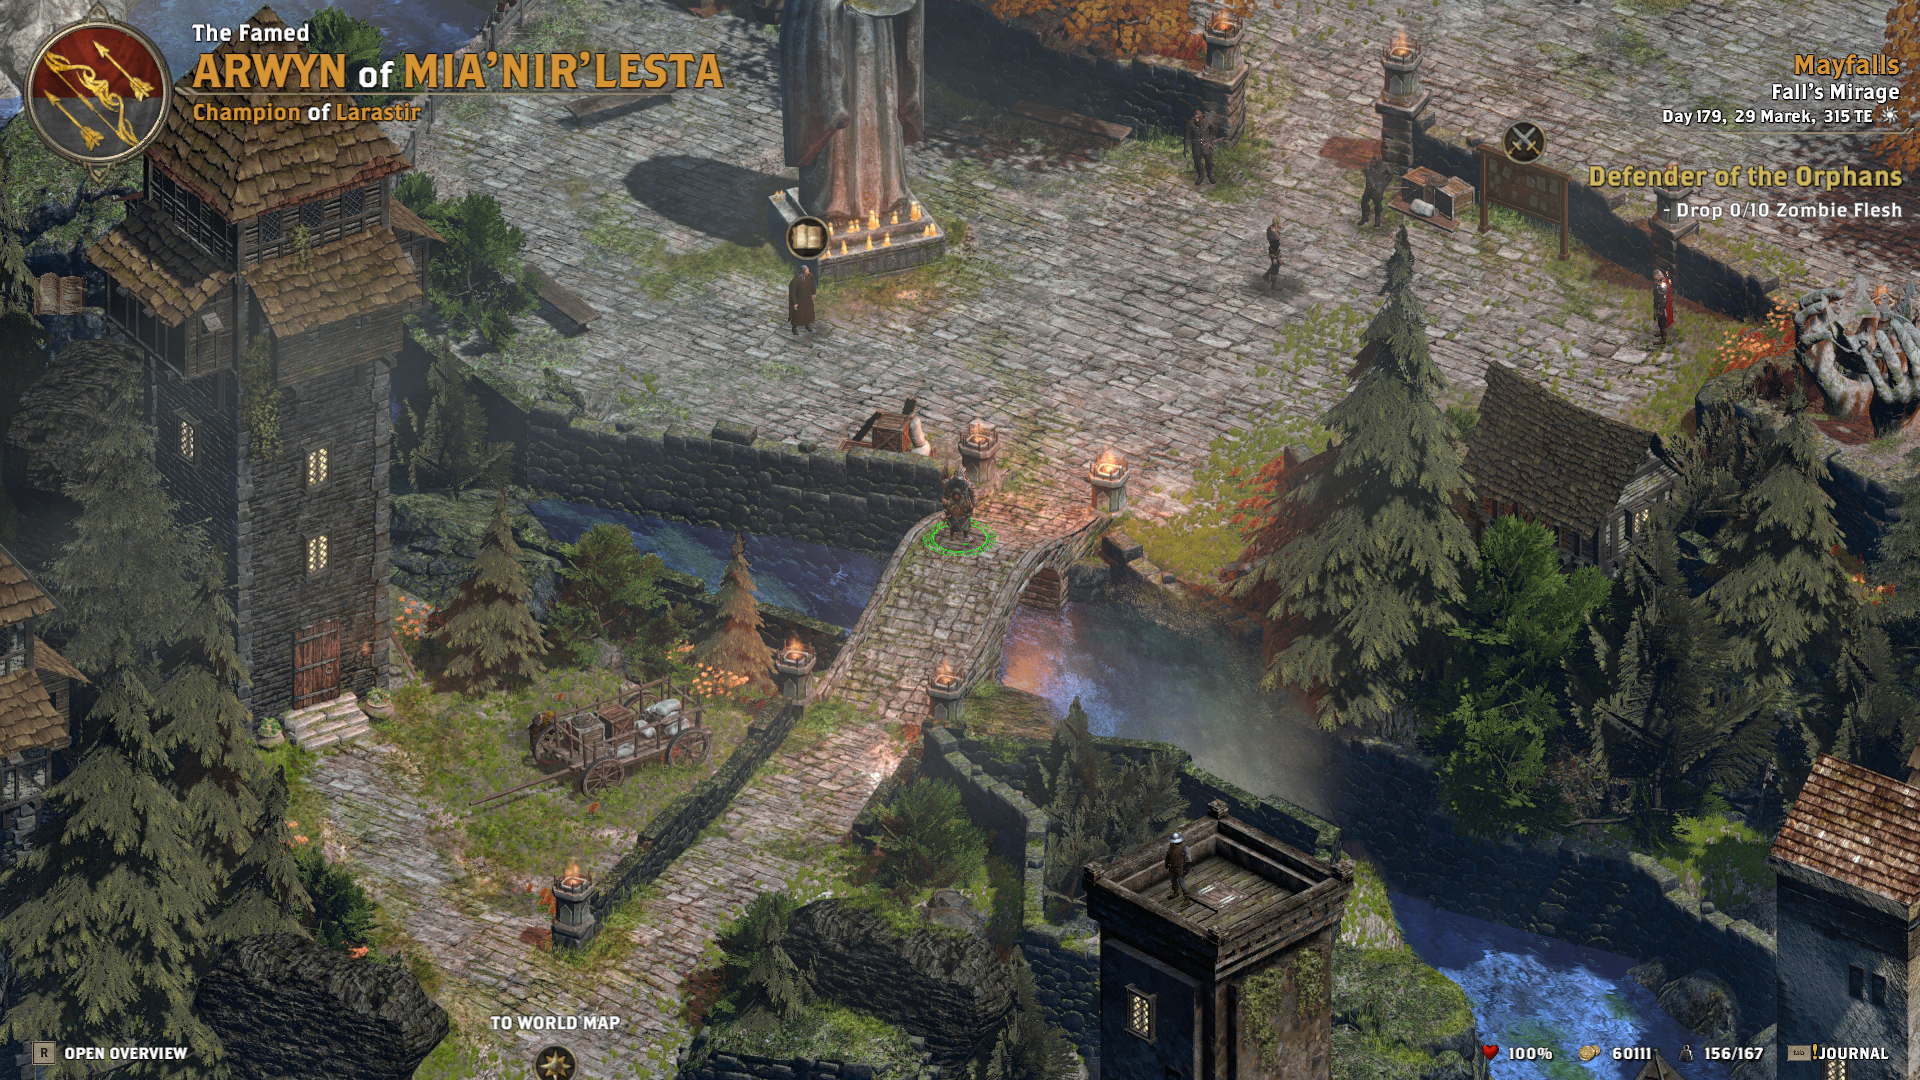 Print Screen de um trecho de gameplay de Alaloth Champions of the Four Kingdoms na região de Mayfalls